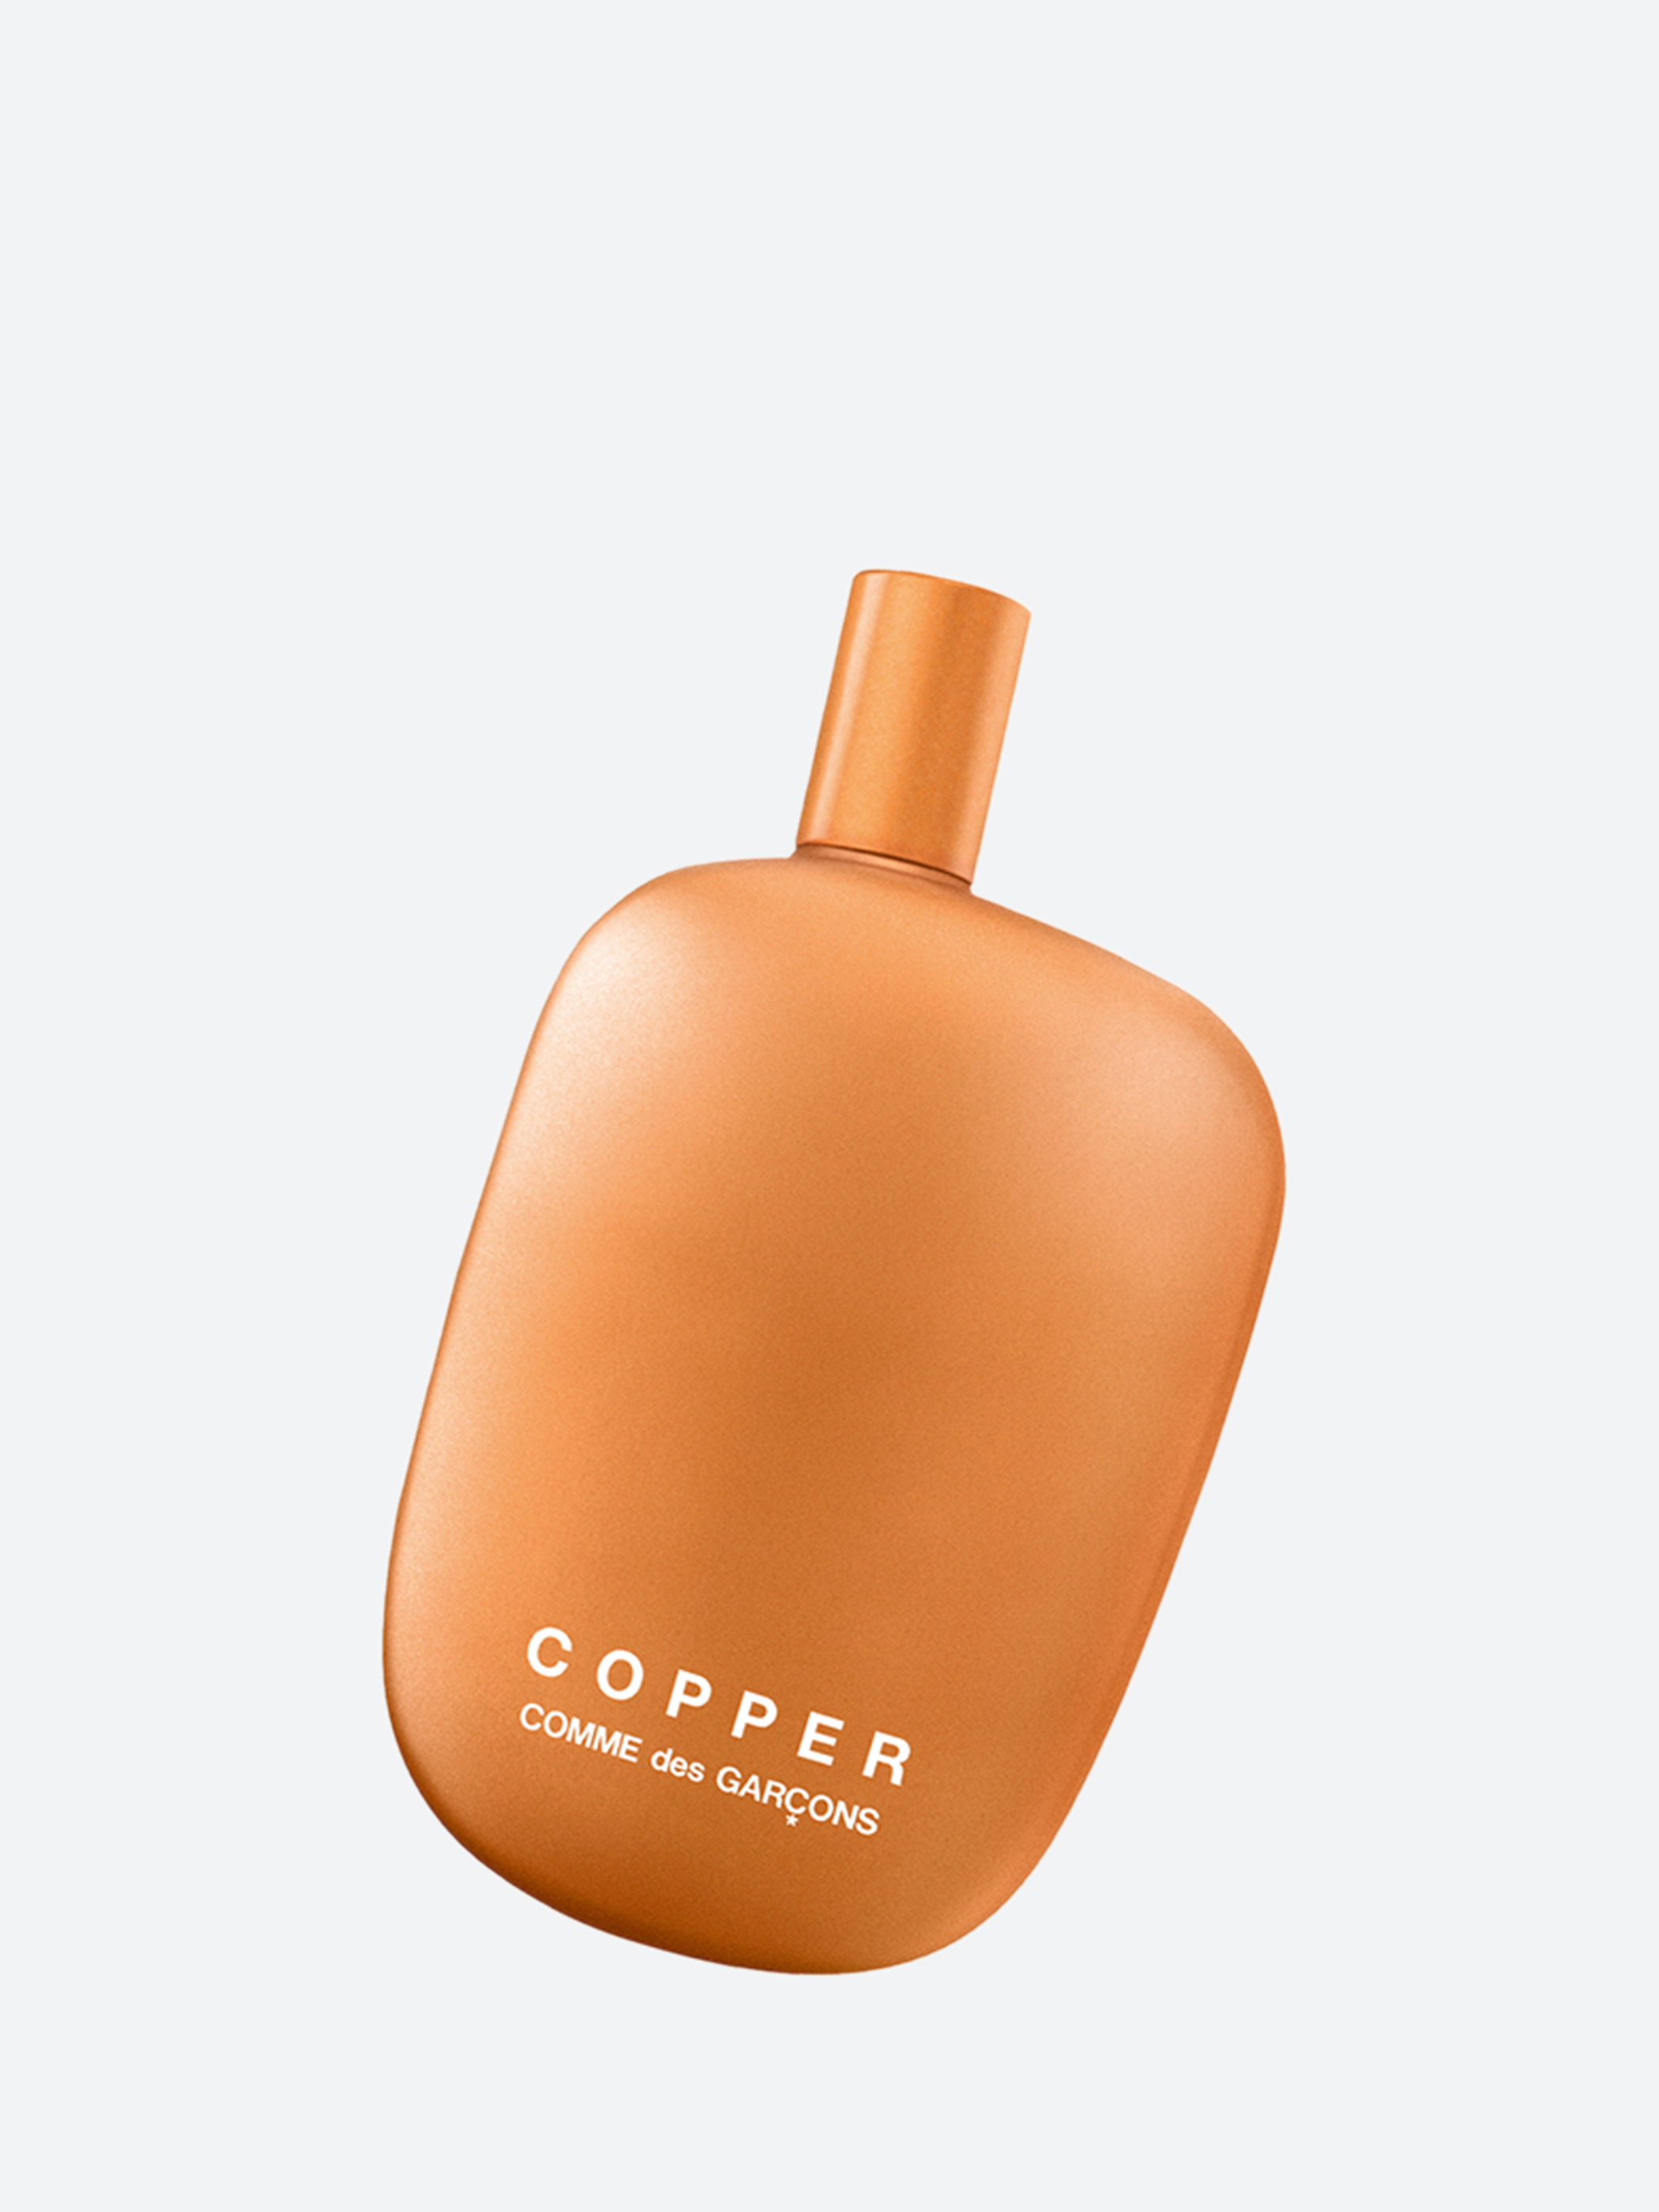 Copper 100ml